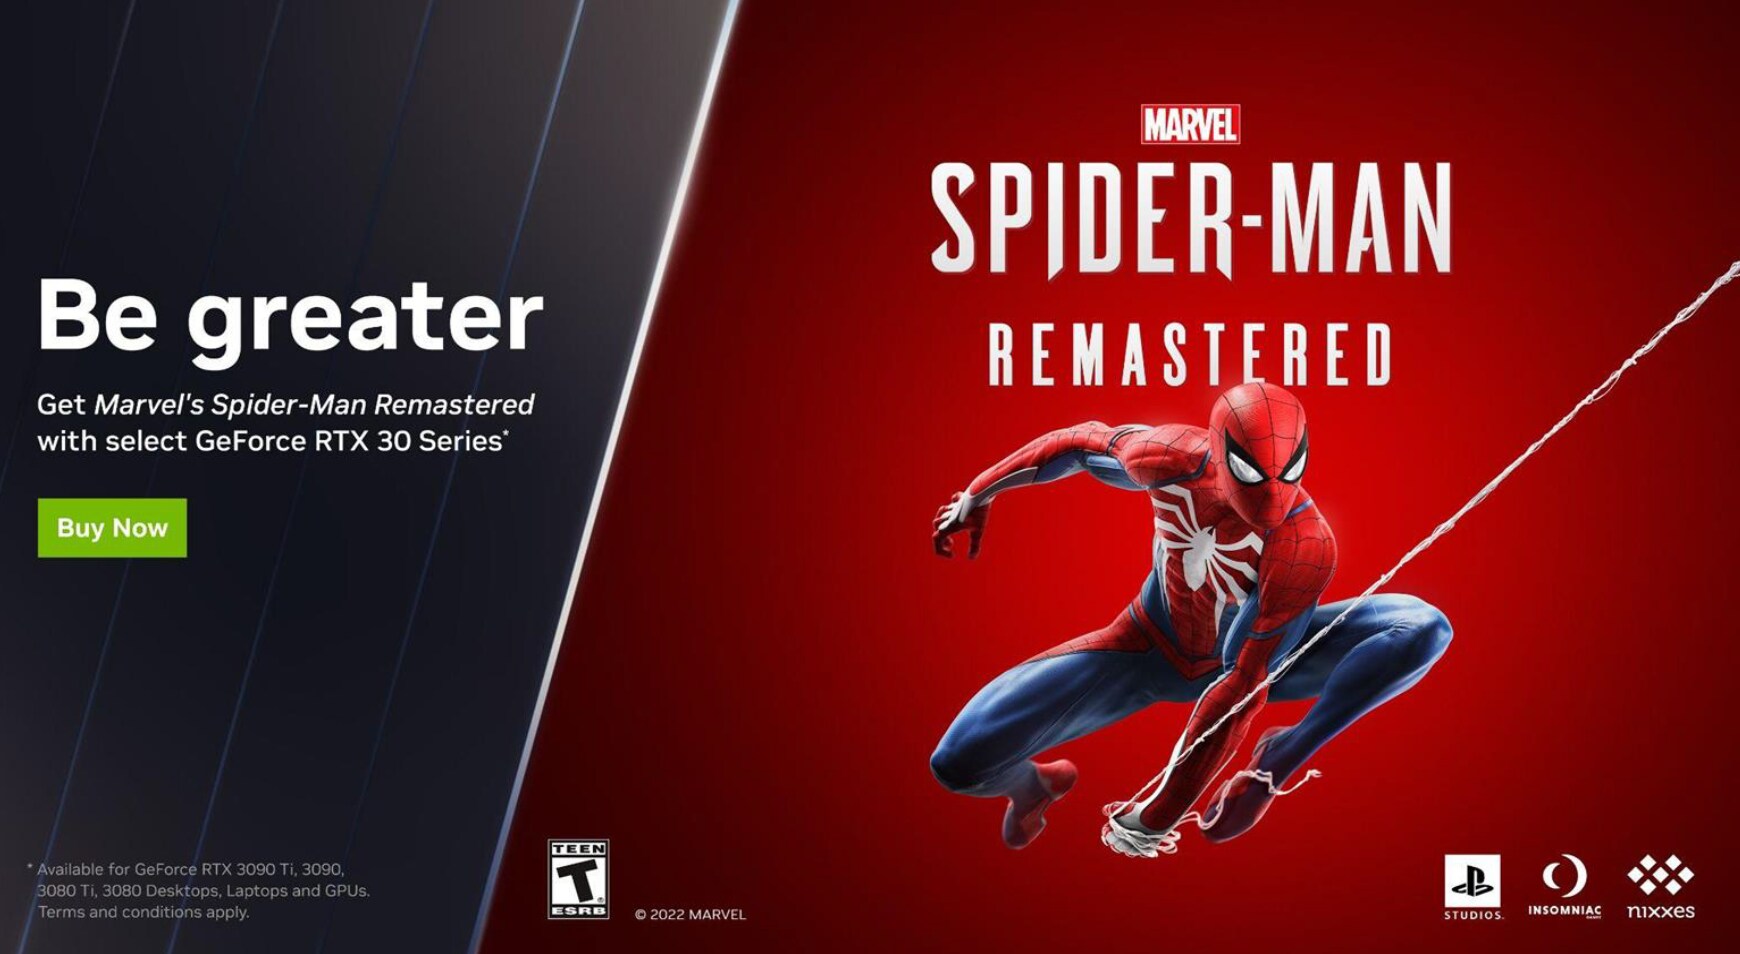 *Spider-Man Remastered følger med på kjøpet når du installerer og registrerer kjøpet i GeForce Experience. Trykk på "Les mer" for guide til registrering.